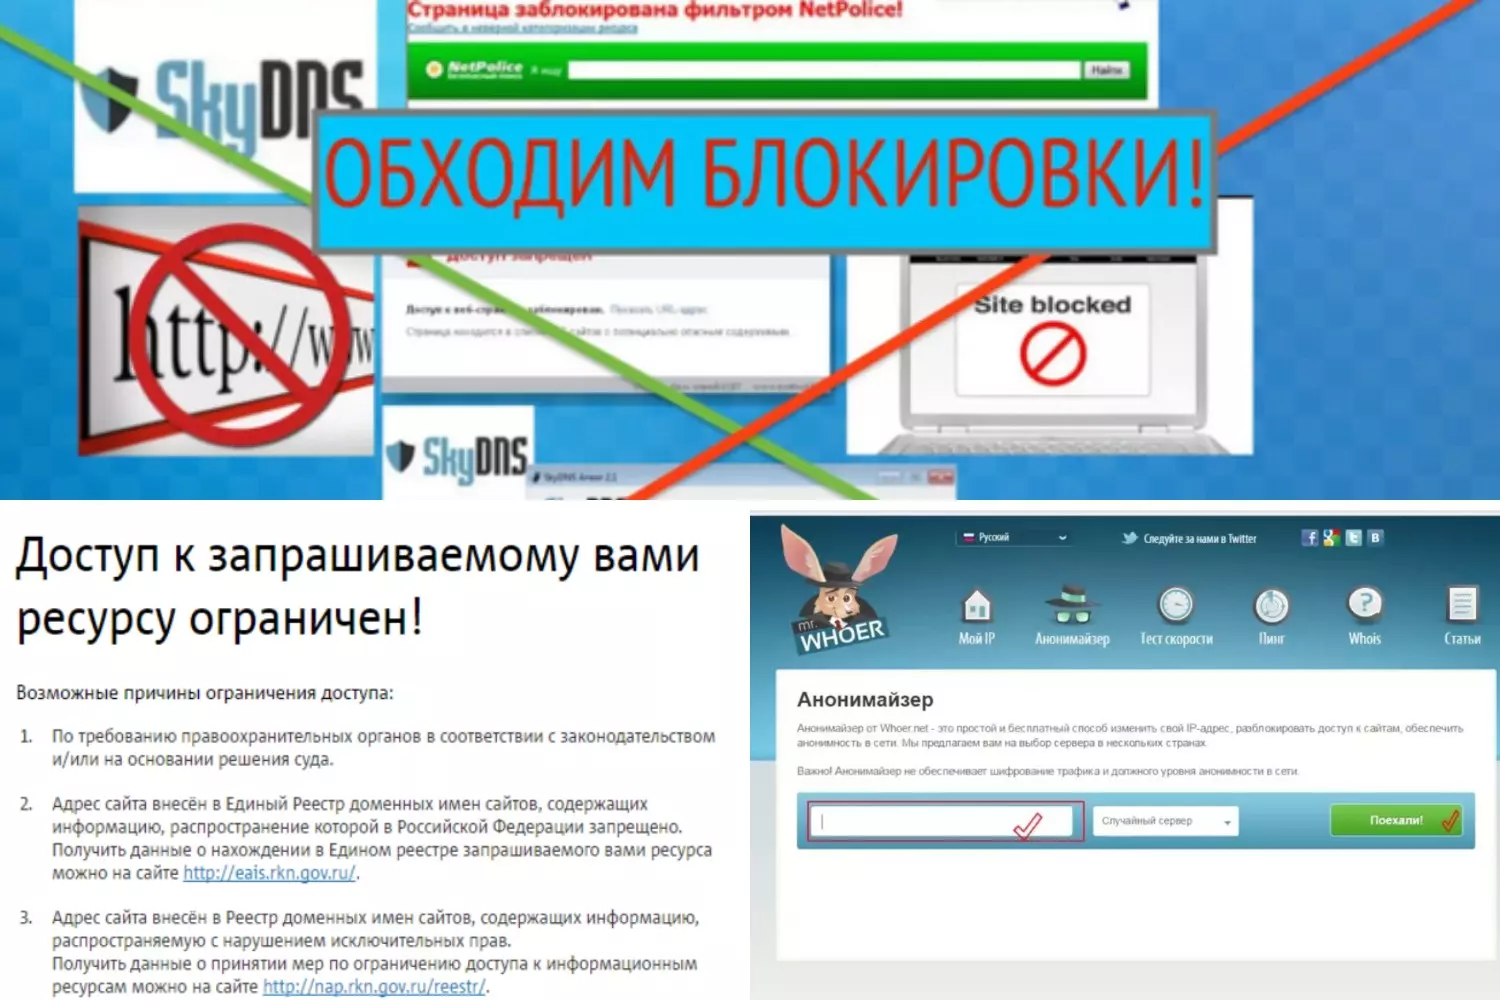 Обход блокировок рунета не работает. Обход блокировки сайтов. Обойти блокировку сайтов. VPN обход блокировки. Программа обхода блокировки сайтов.